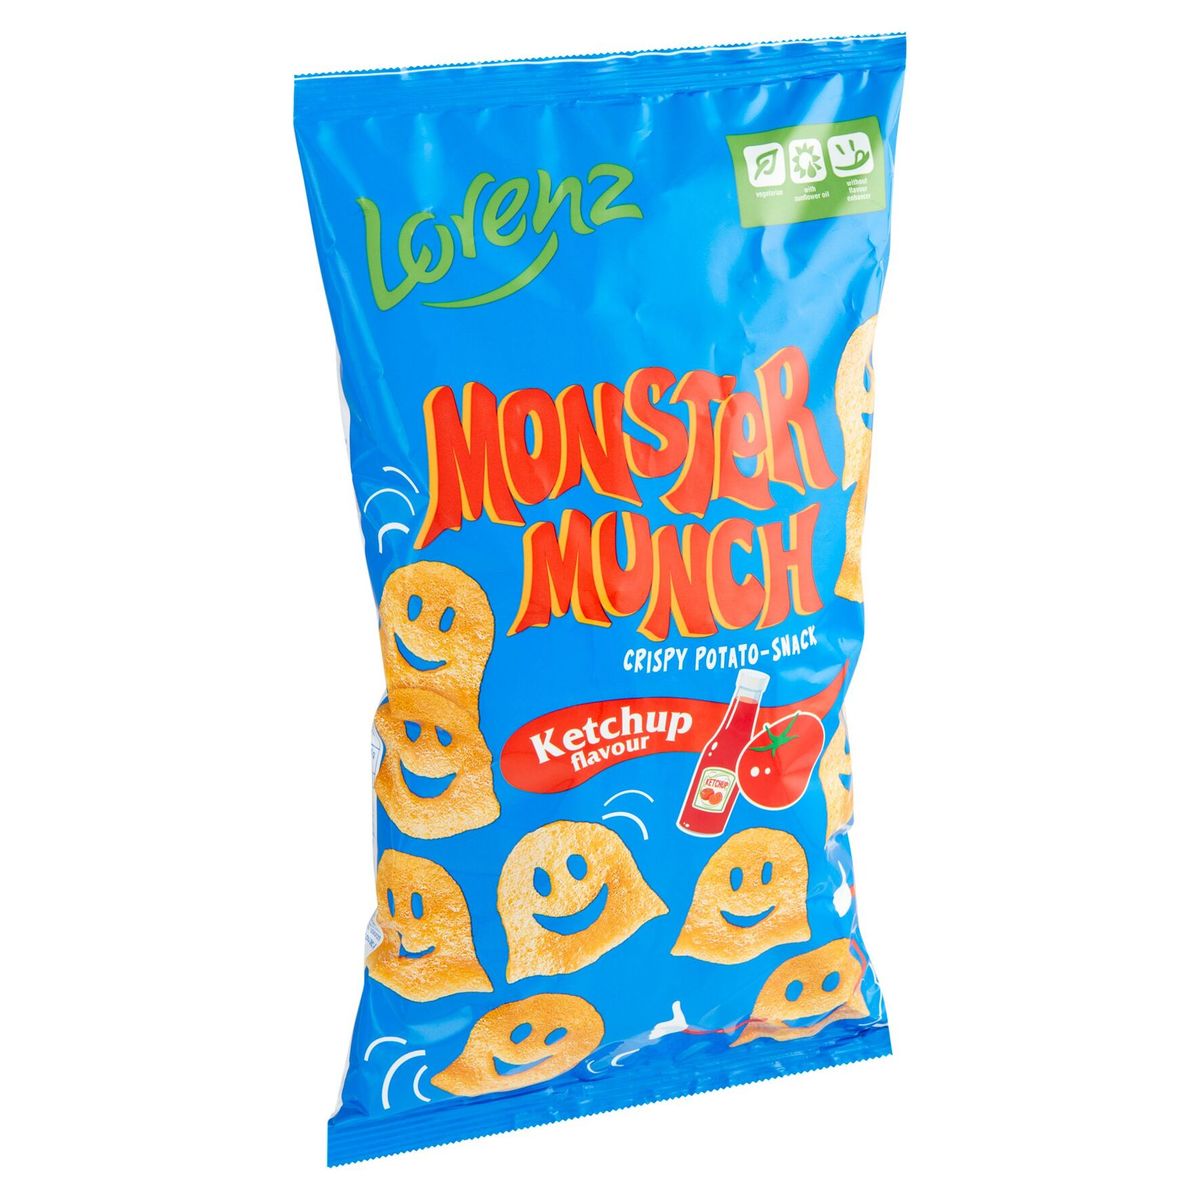 Lorenz Monster Munch Ketchup Flavour 75 g